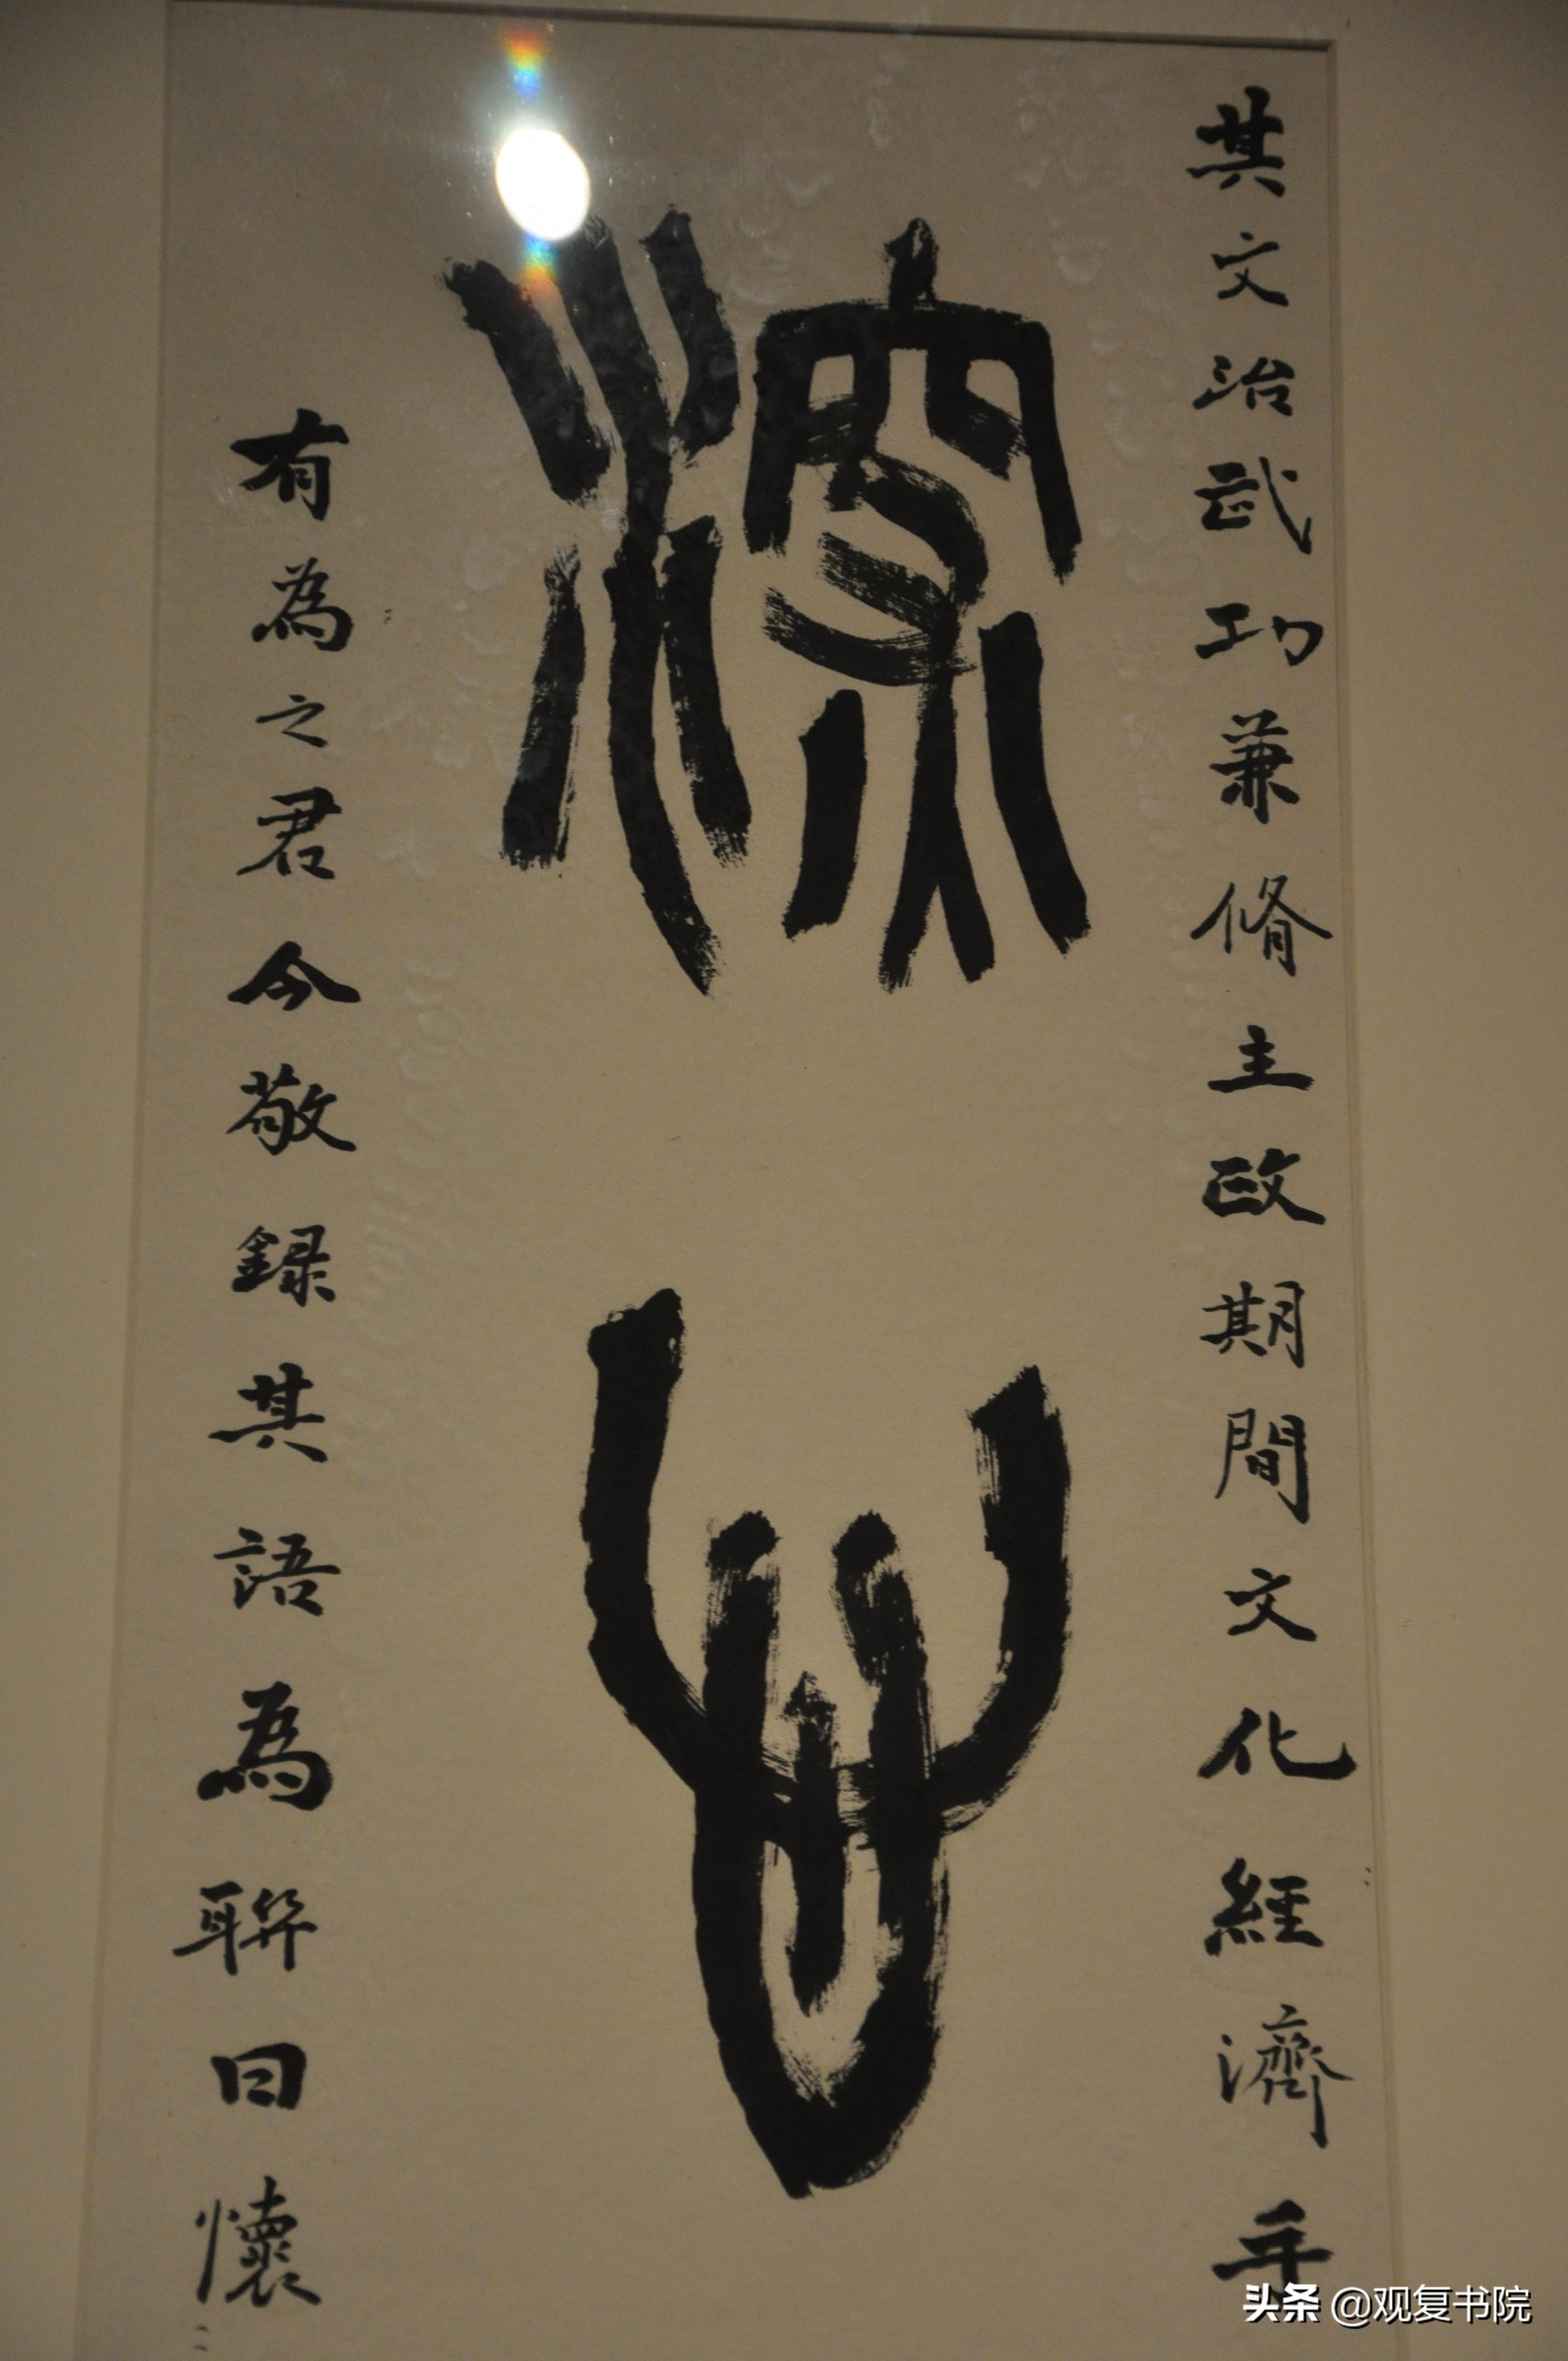 中国美术馆馆藏当代书法名家书法展《上》